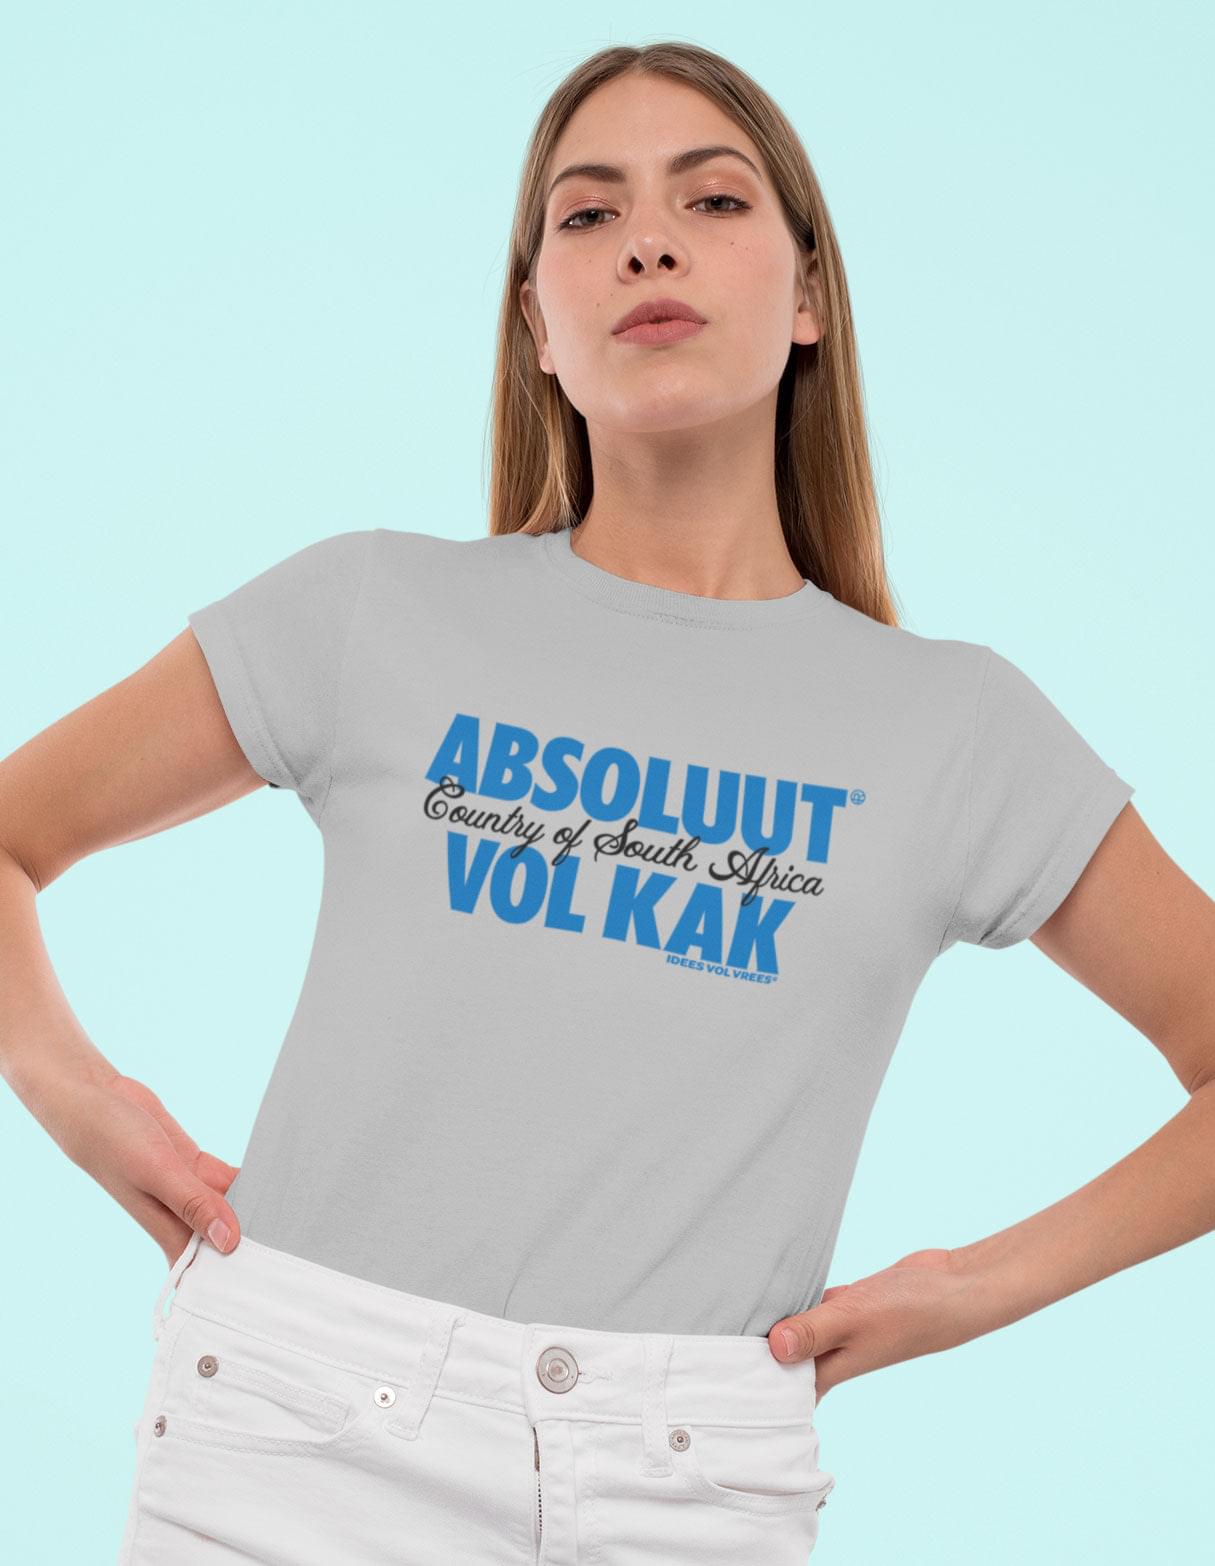 Idees Vol Vrees® Absoluut Volkak Women's T-shirt